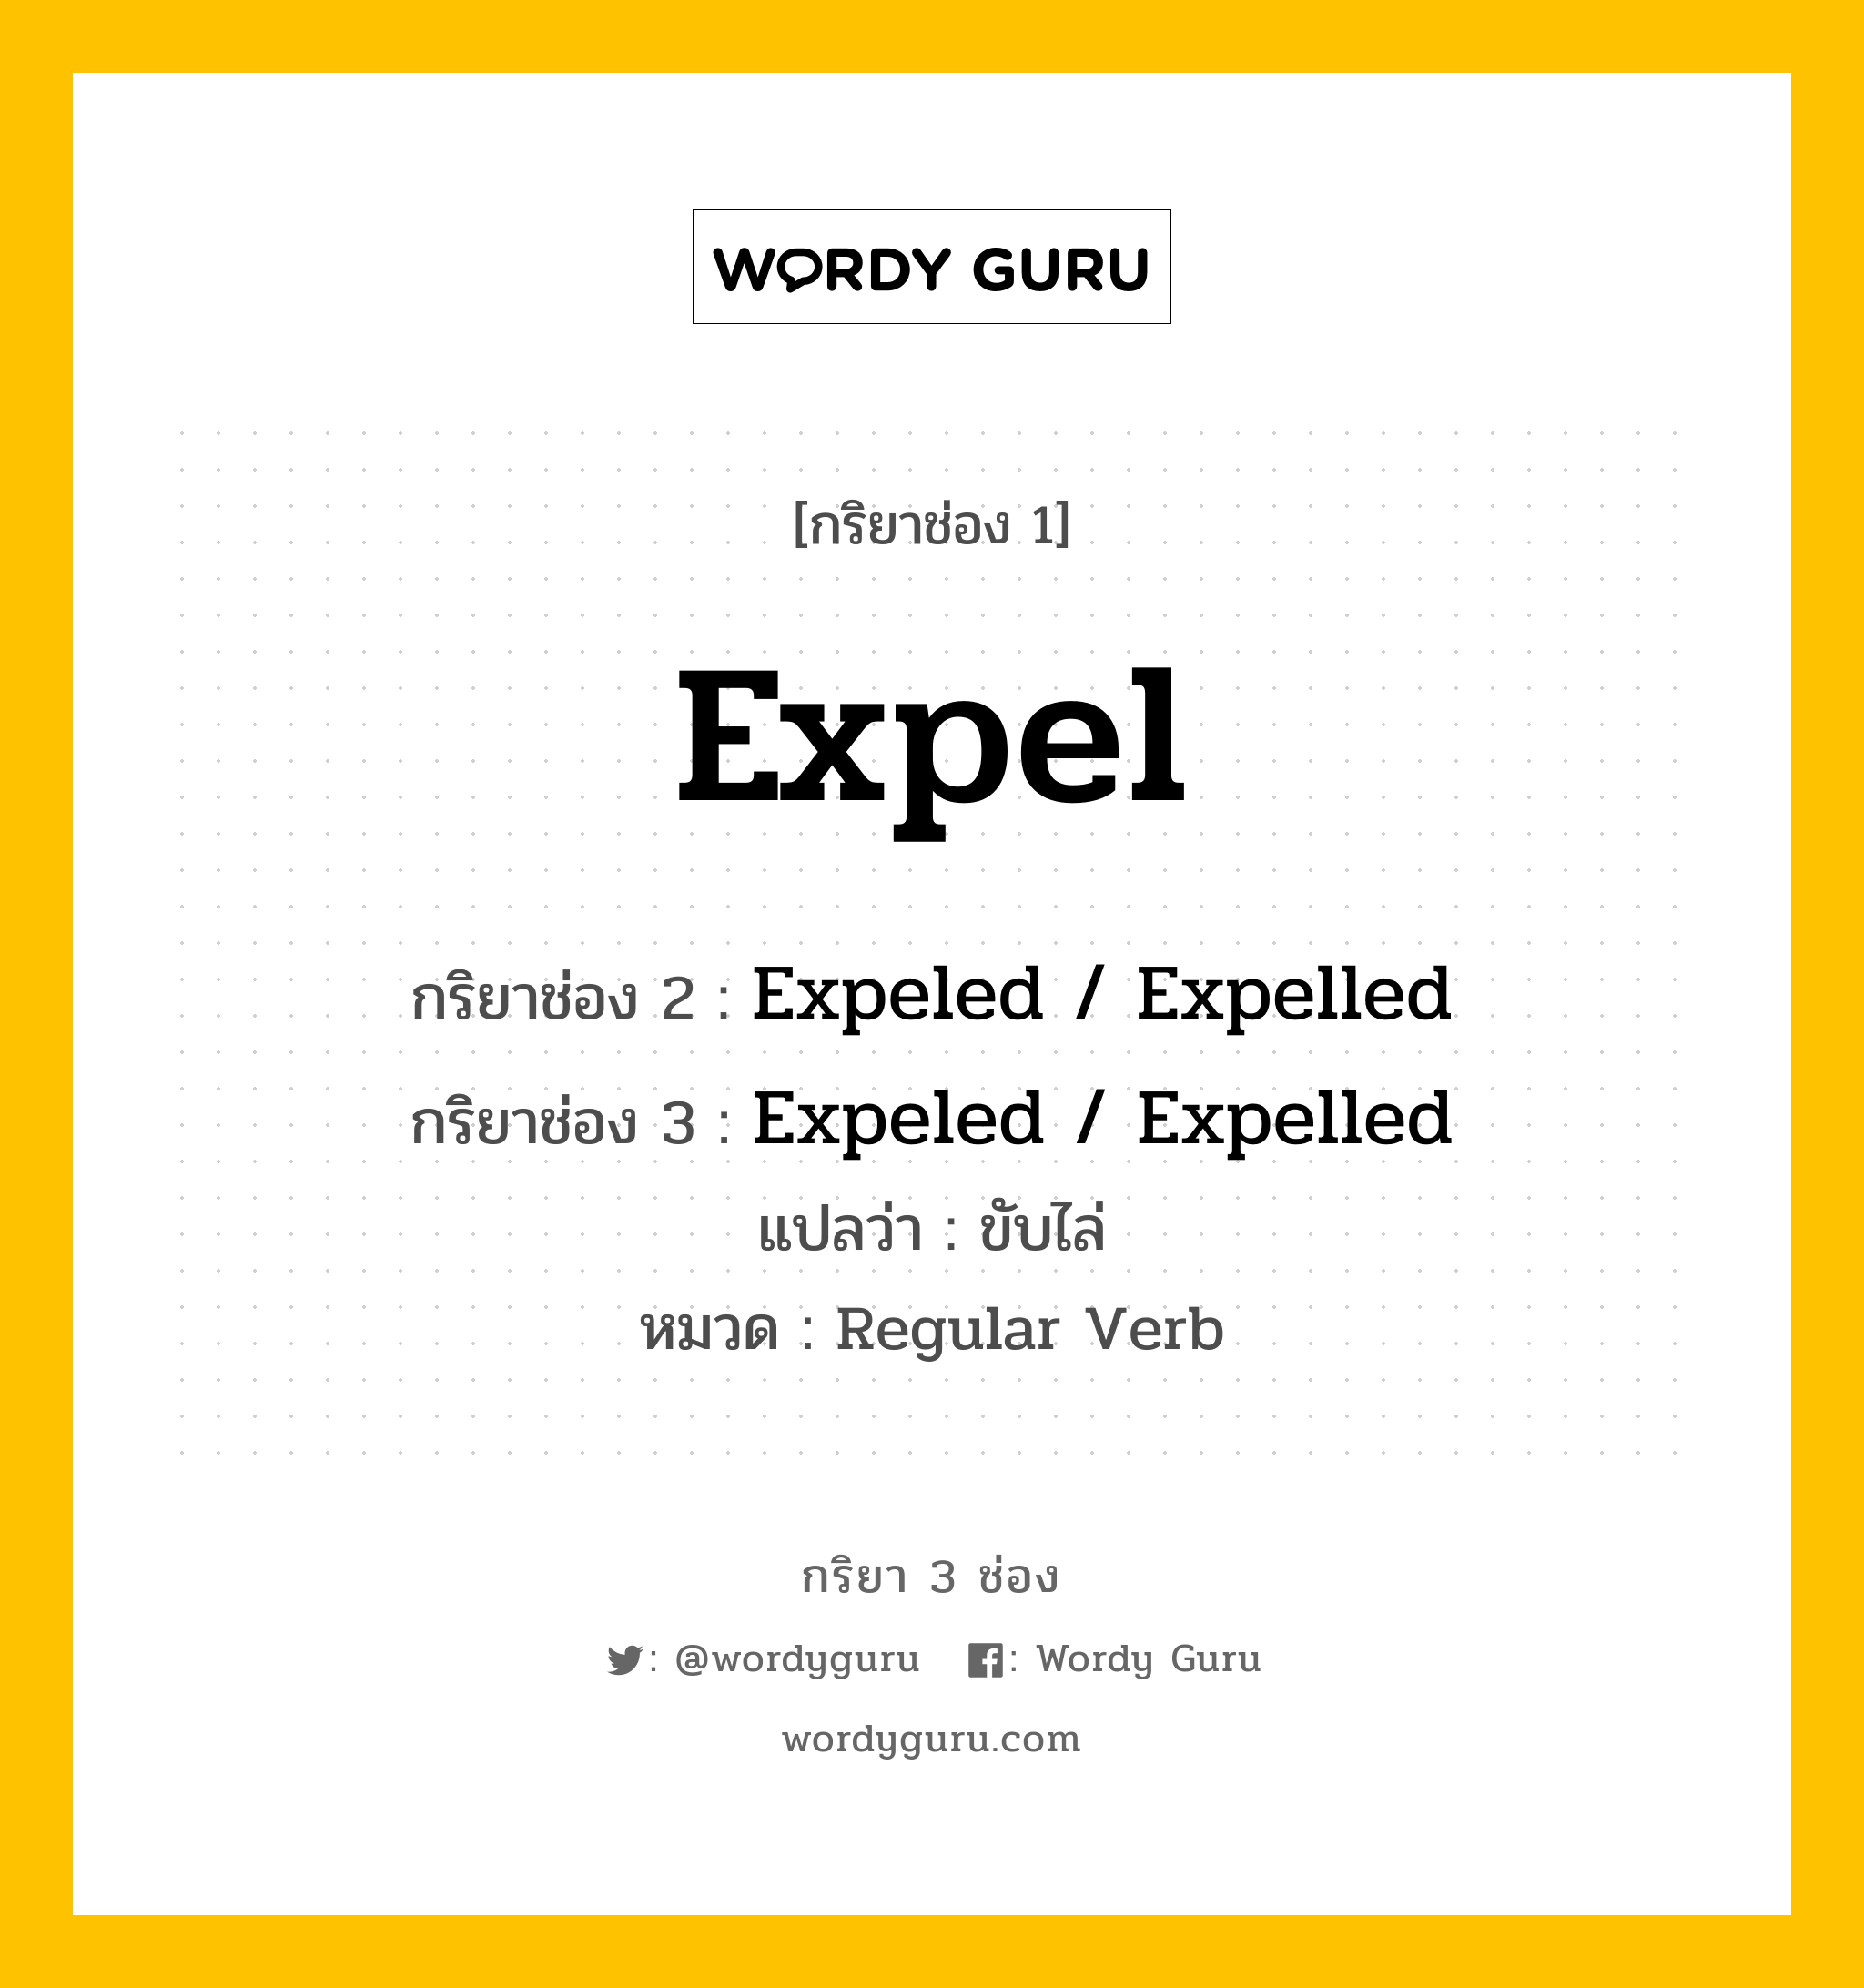 กริยา 3 ช่อง ของ Expel คืออะไร? มาดูคำอ่าน คำแปลกันเลย, กริยาช่อง 1 Expel กริยาช่อง 2 Expeled / Expelled กริยาช่อง 3 Expeled / Expelled แปลว่า ขับไล่ หมวด Regular Verb หมวด Regular Verb